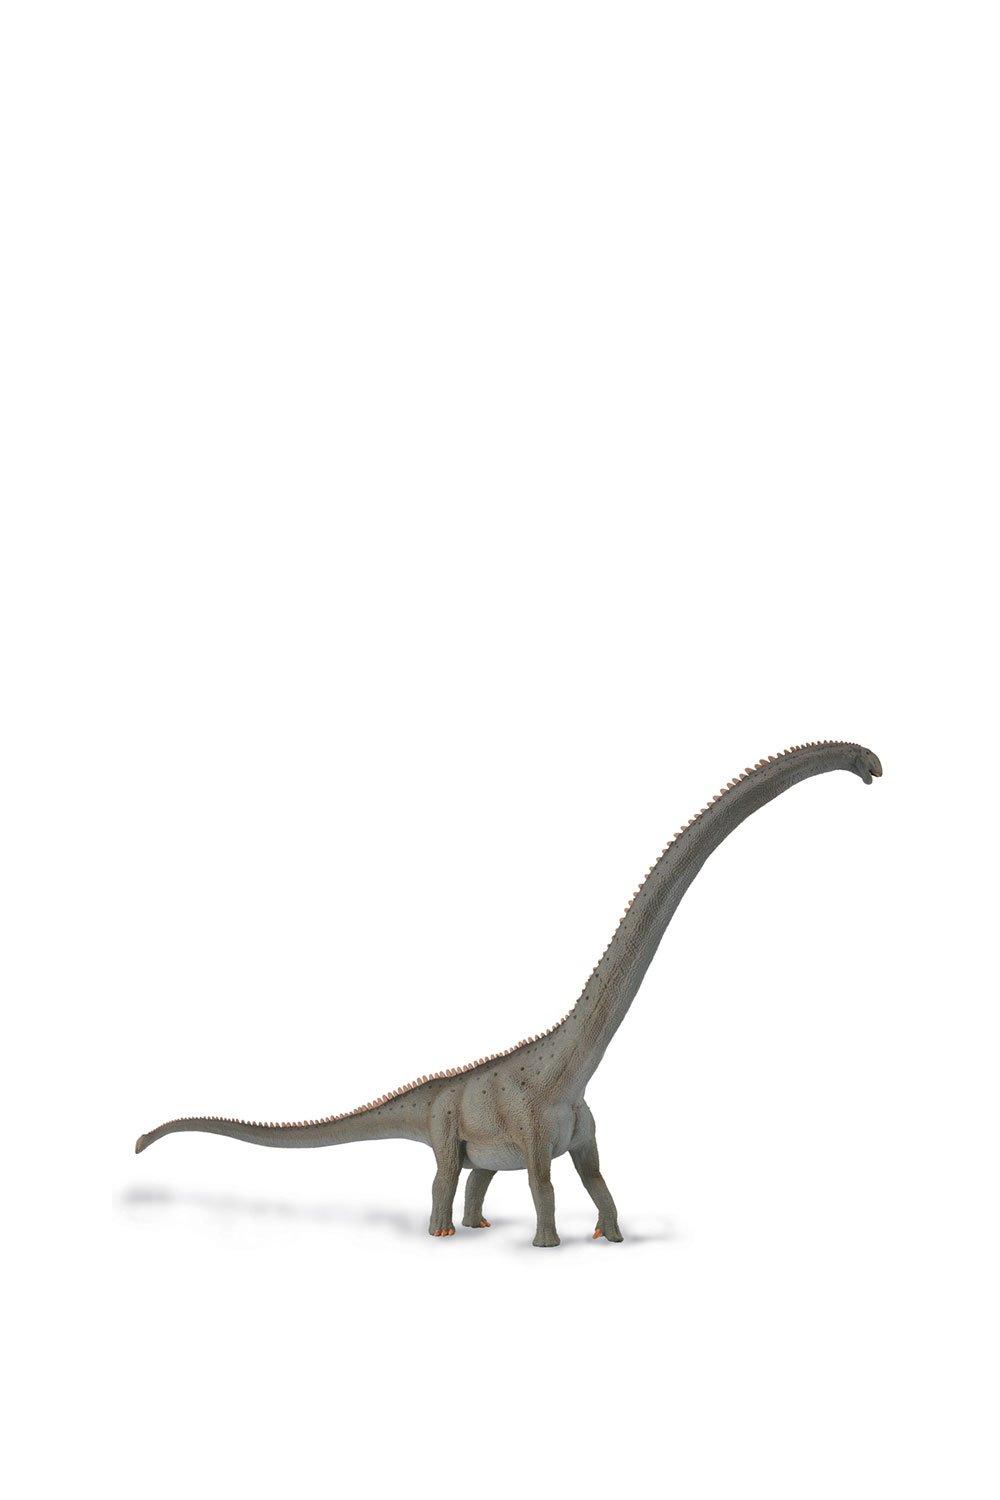 Mamenchisaurus Dinosaur Toy